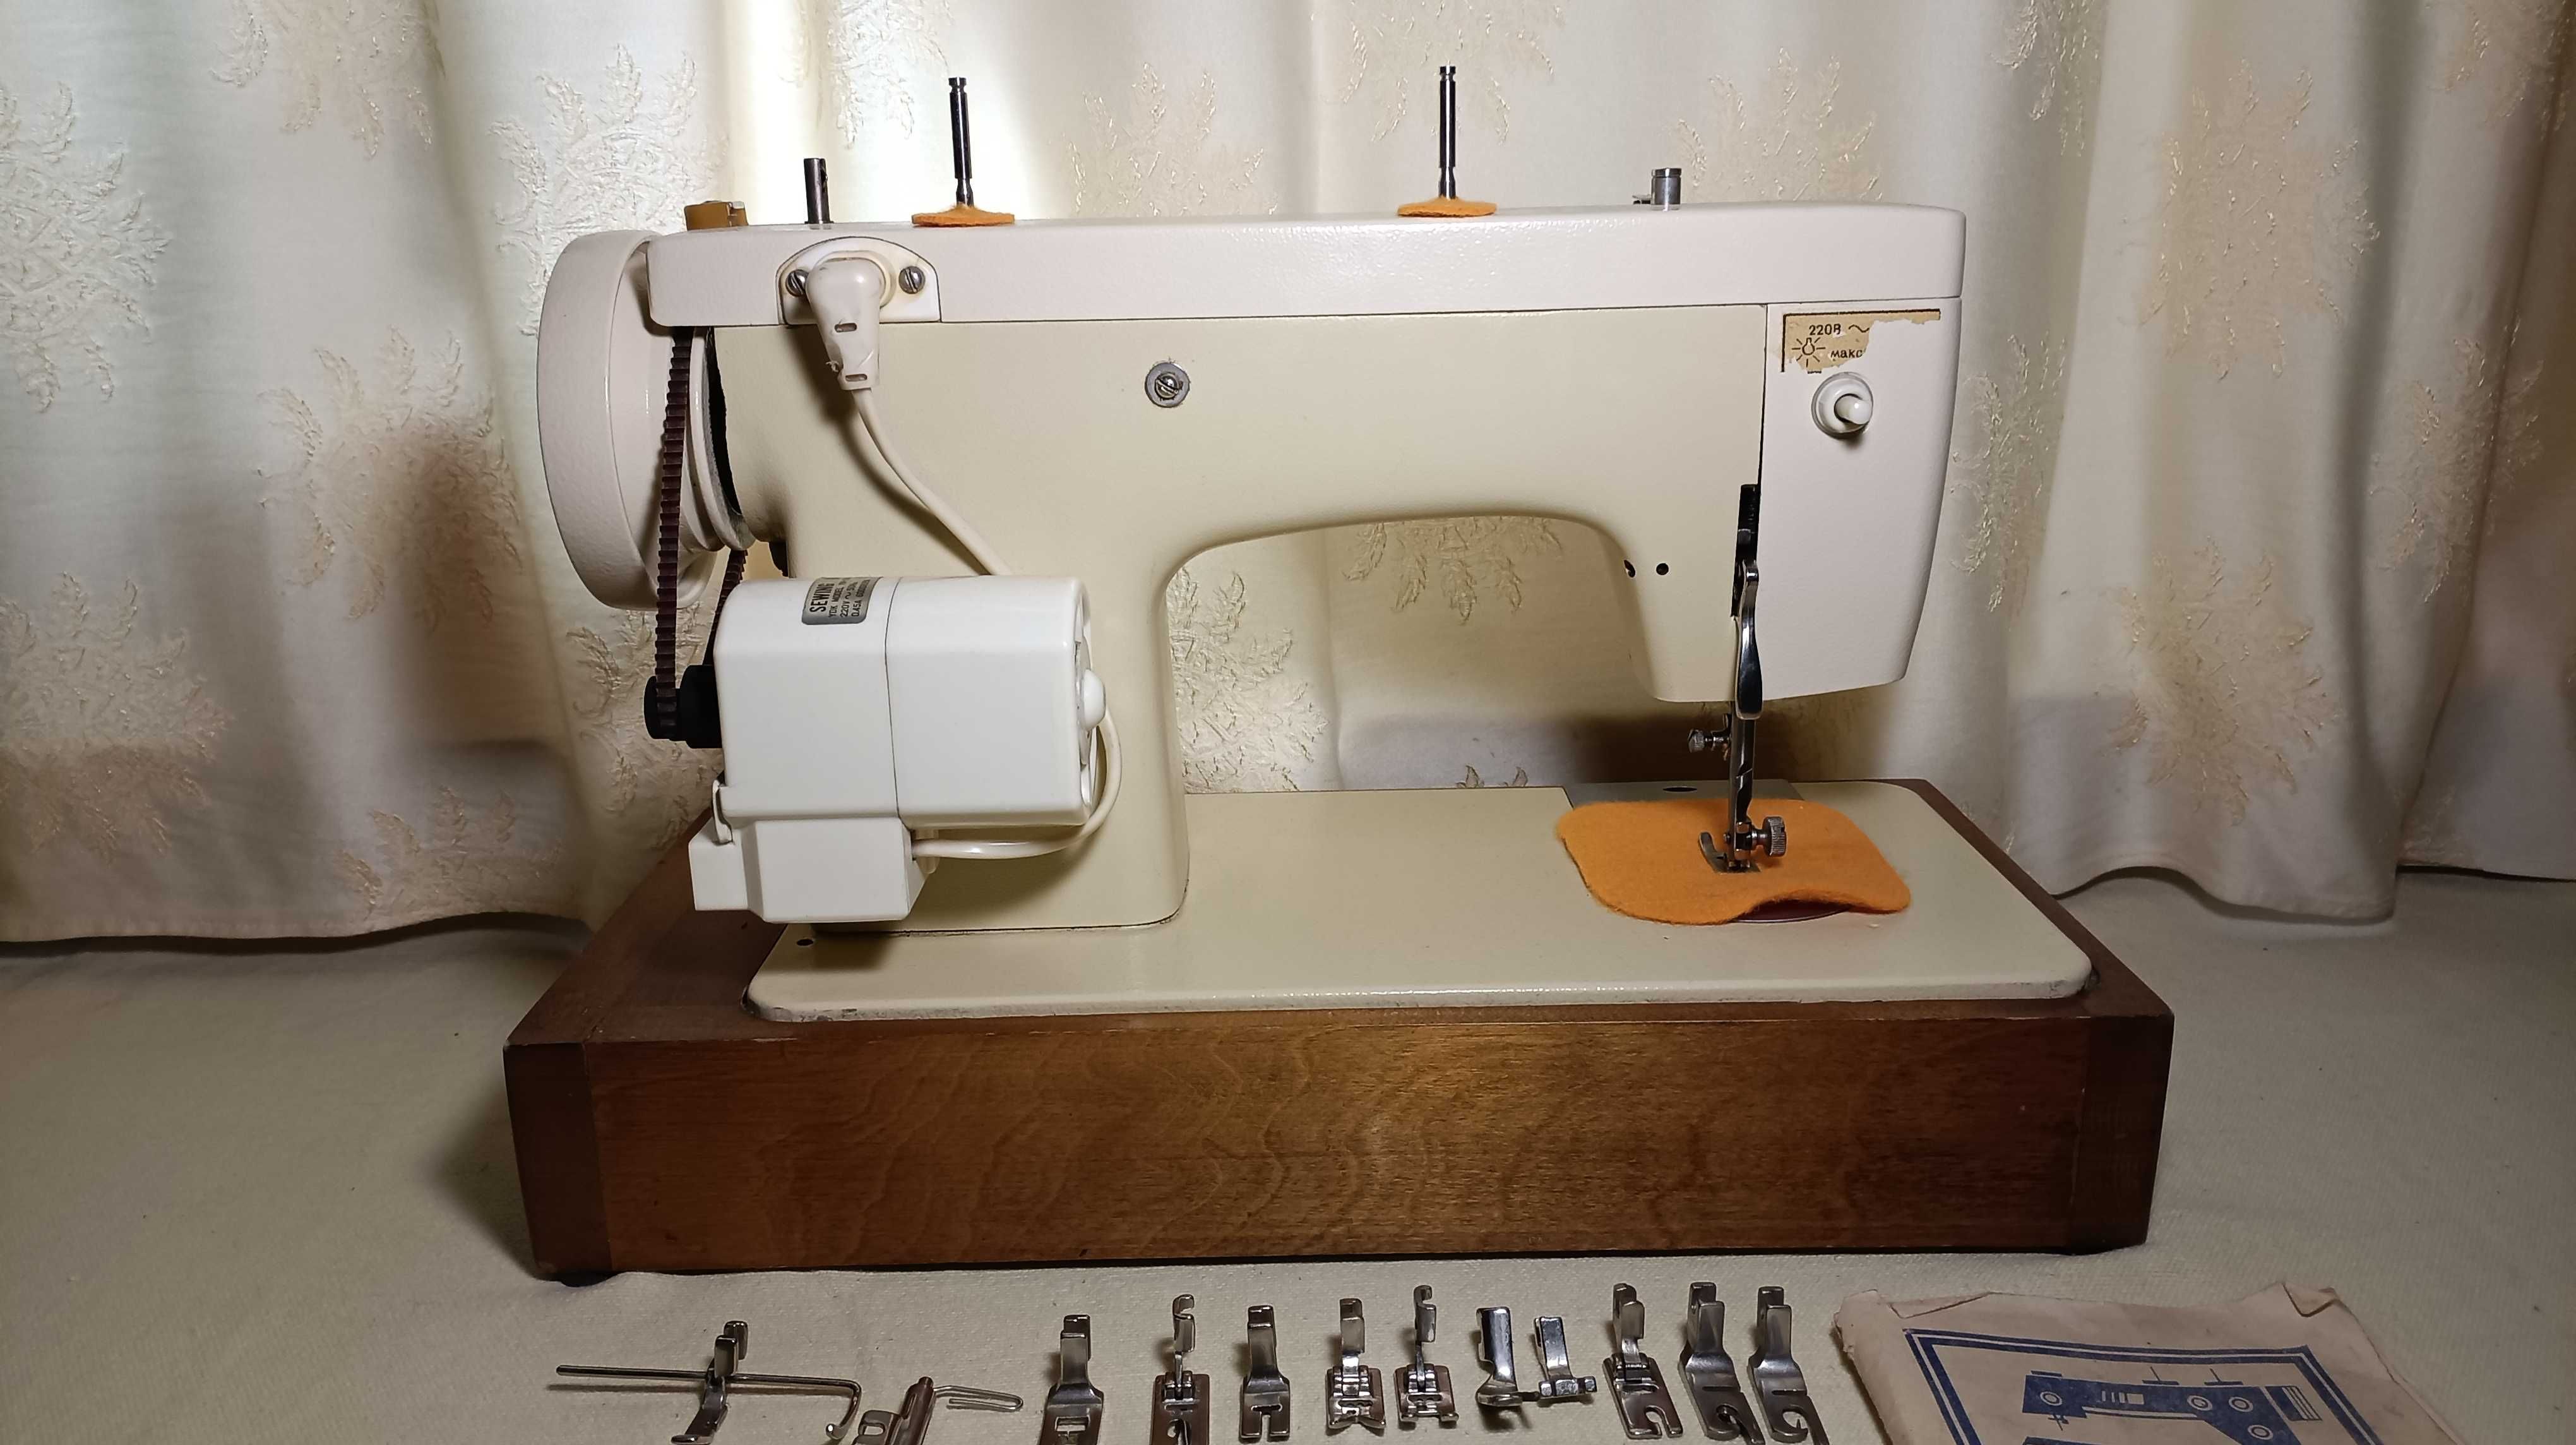 Машинка швейная Чайка 142М с электроприводом и подстветкою